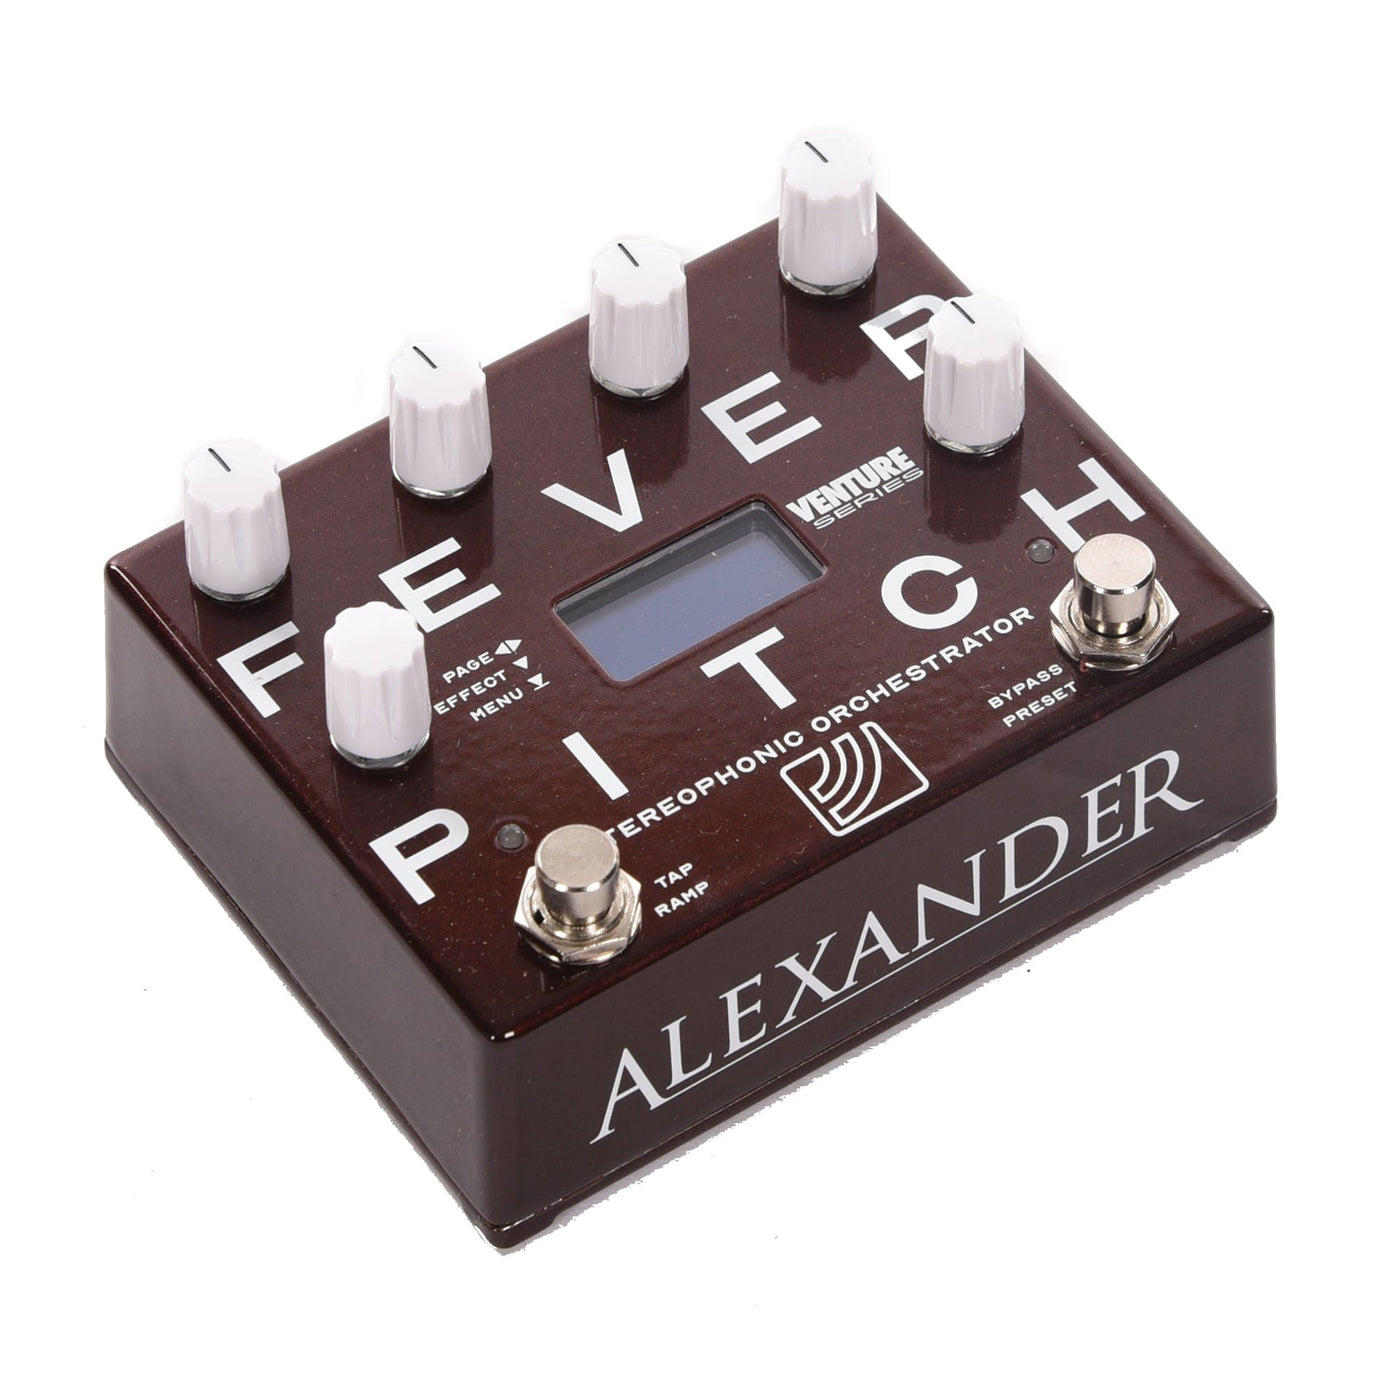 Alexander Fever Pitch – Motor City Guitar